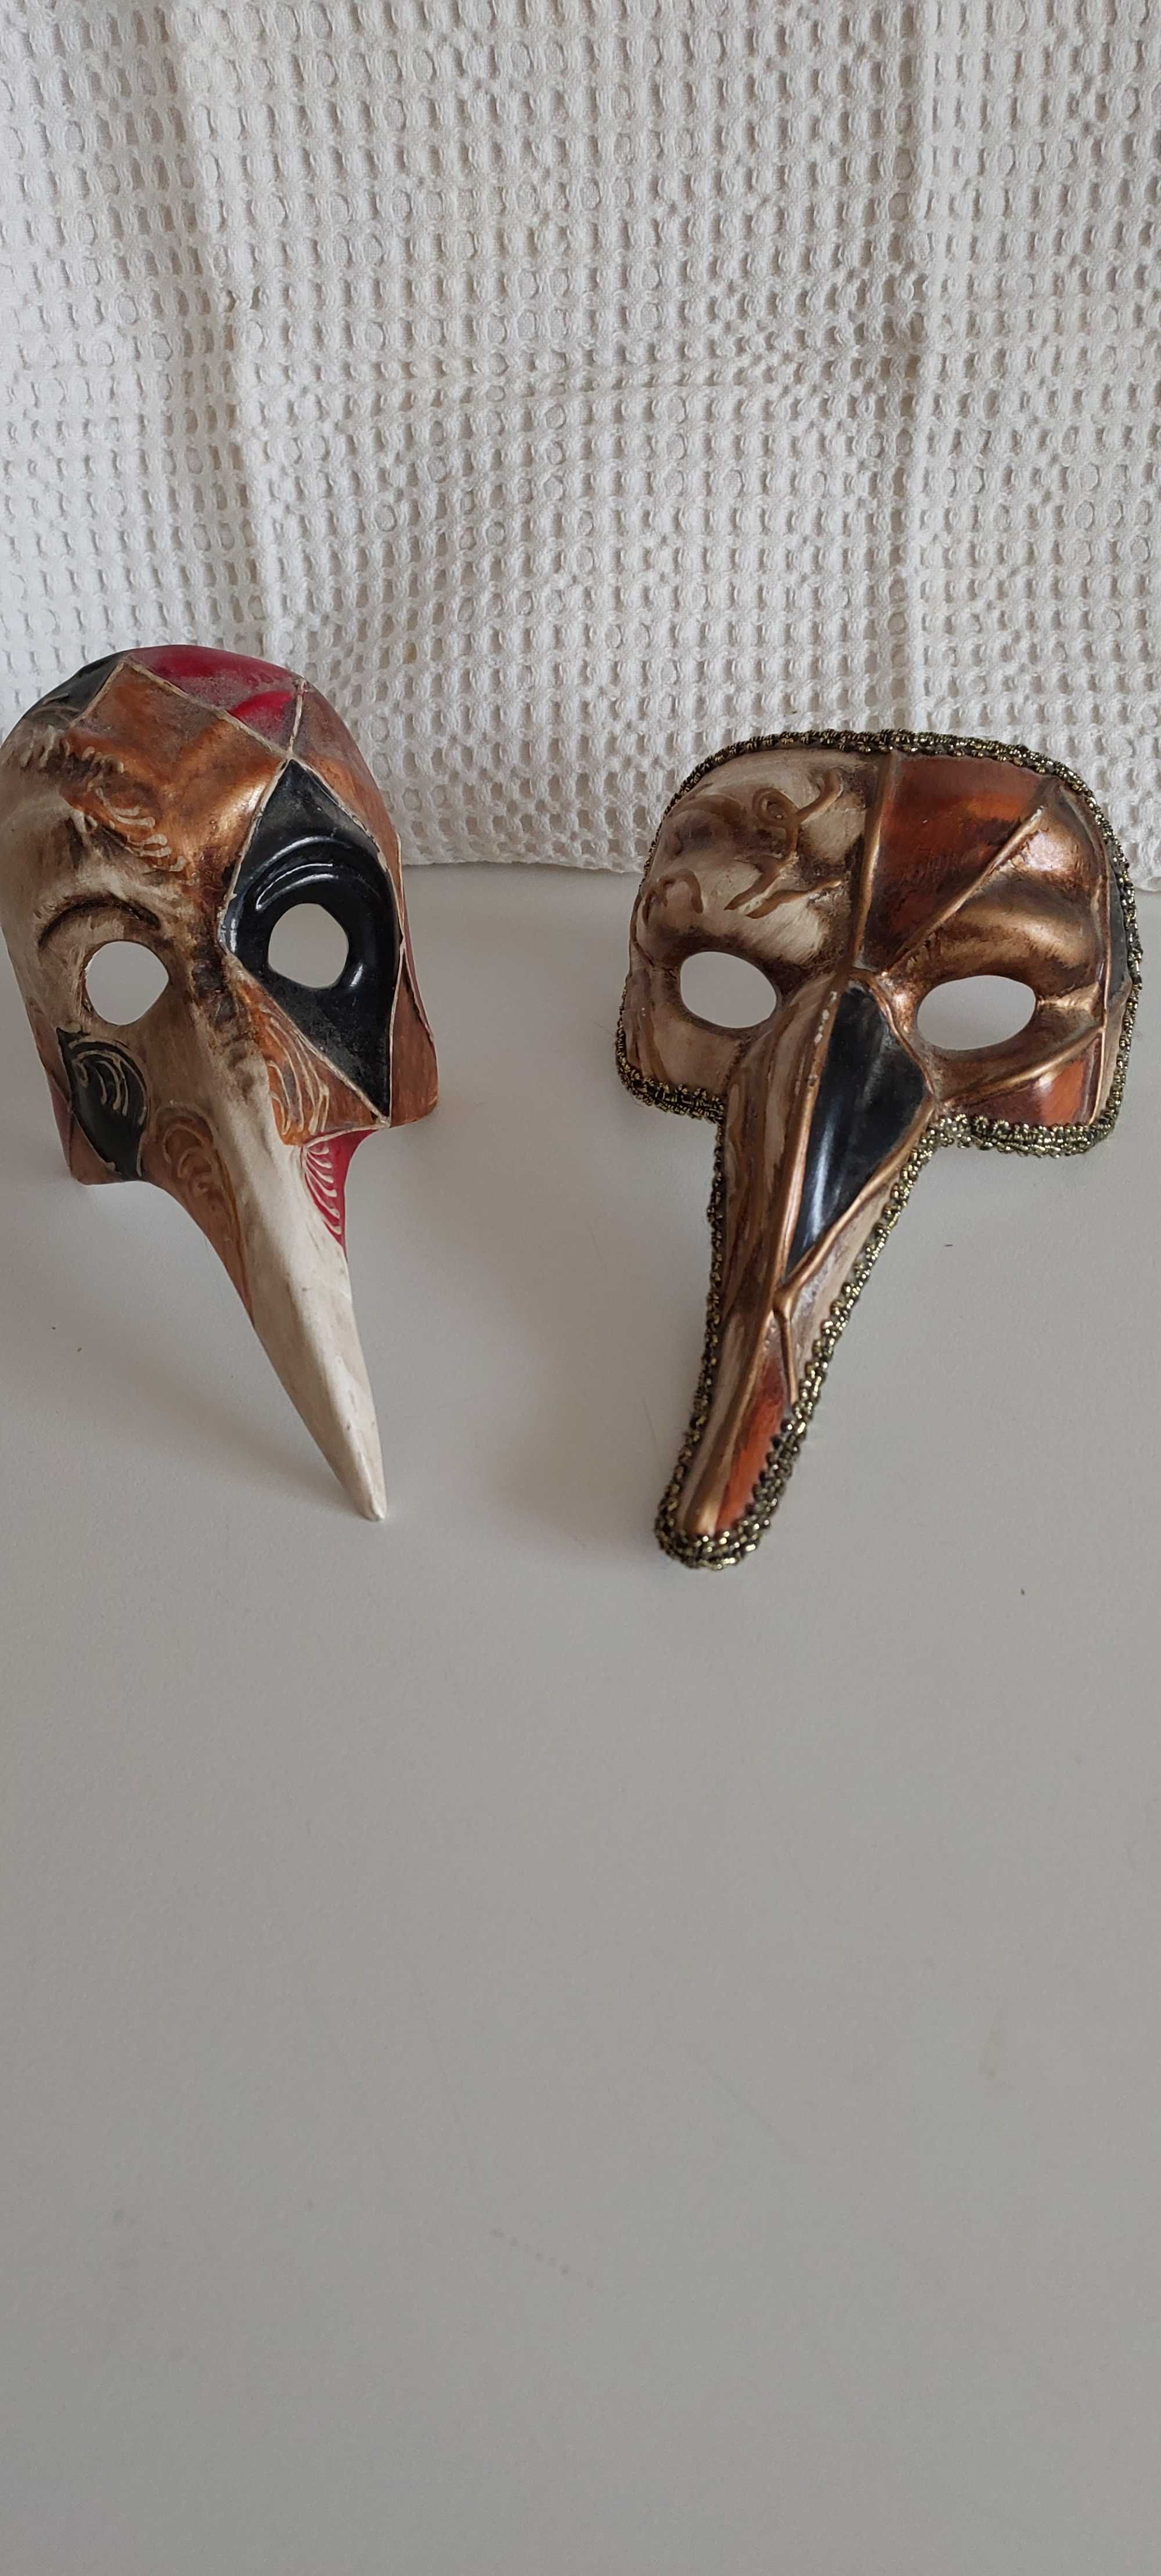 Máscaras do Carnaval de Veneza